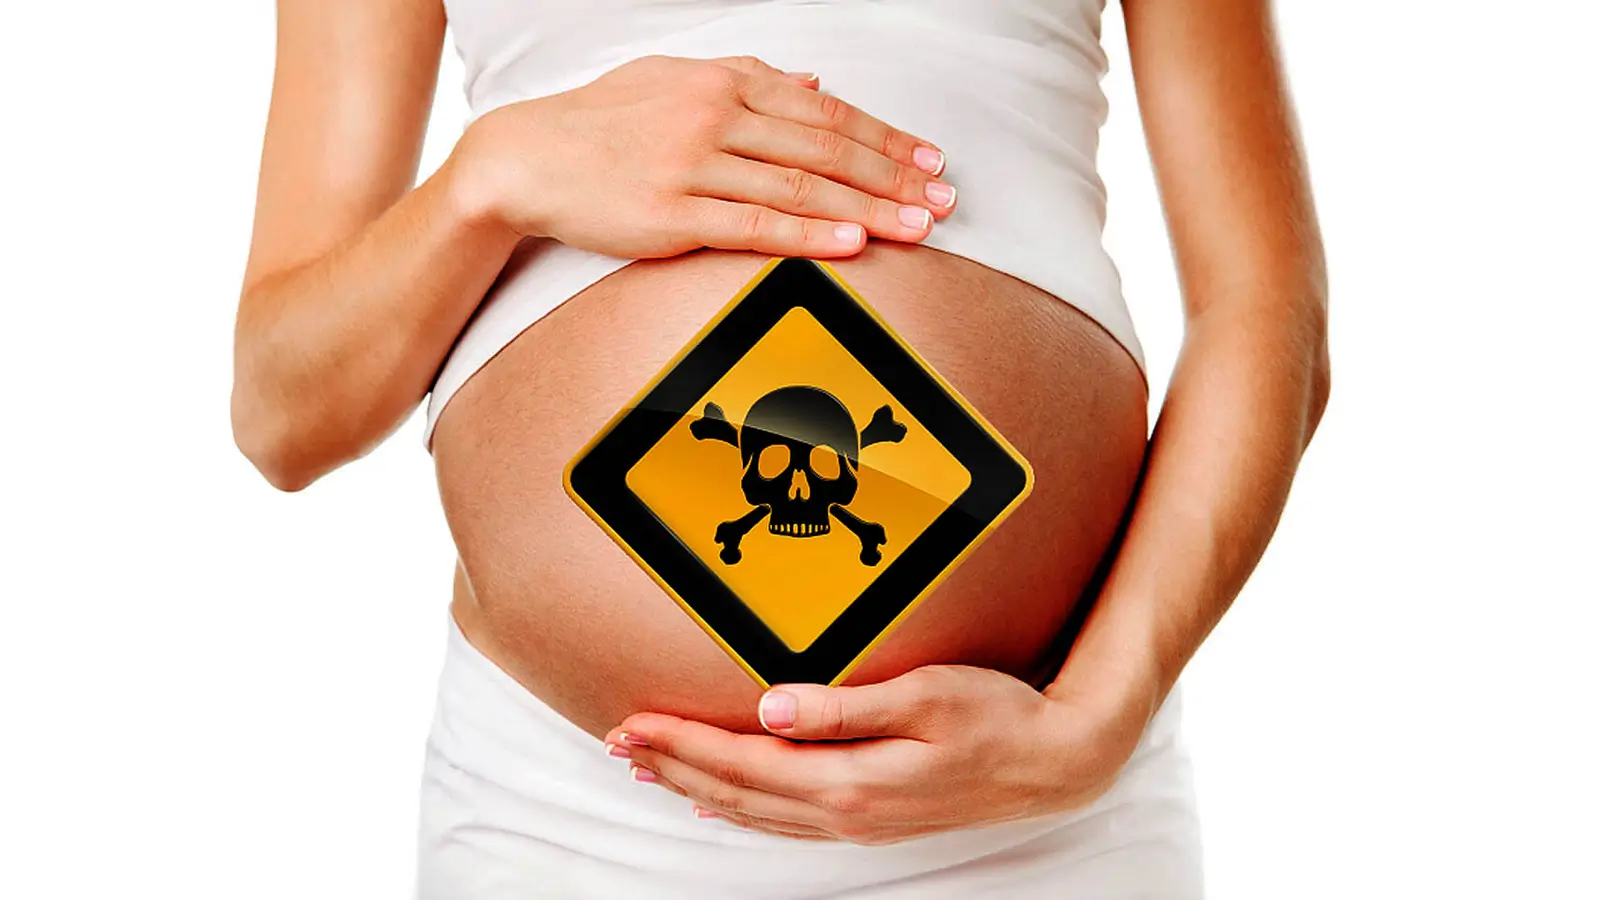 Desintoxicación y riesgo de exposición tóxica durante el embarazo: El argumento vegano